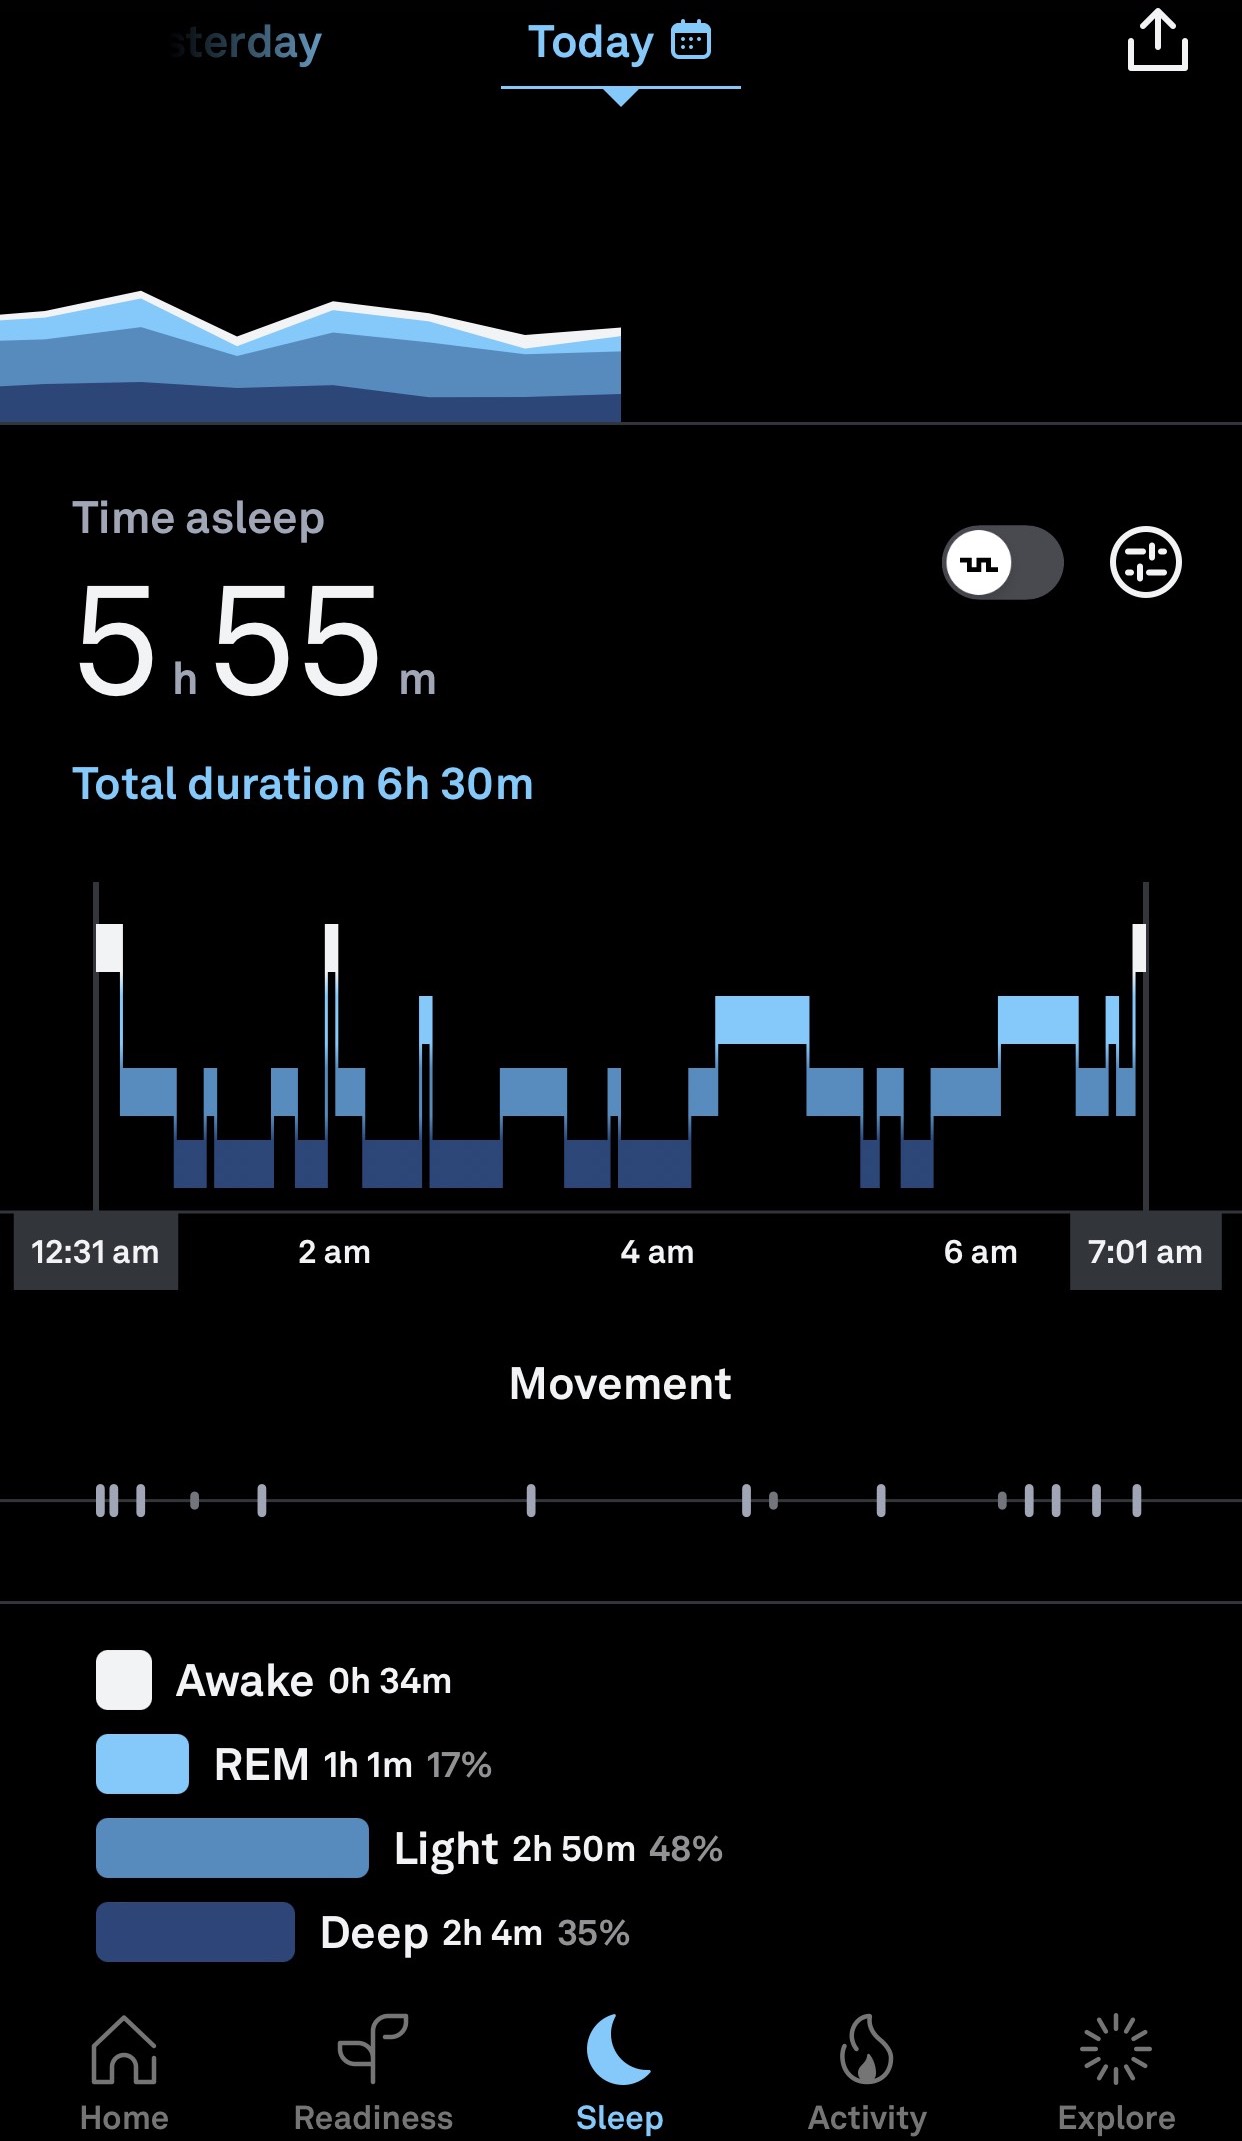 Schlafansicht in der Oura-App, die ein Hypnogramm (Diagramm der Schlafphasen) anzeigt. REM-Schlaf, Leichtschlaf und Tiefschlaf sind in Blautönen dargestellt. Die Wachzeit wird weiß angezeigt